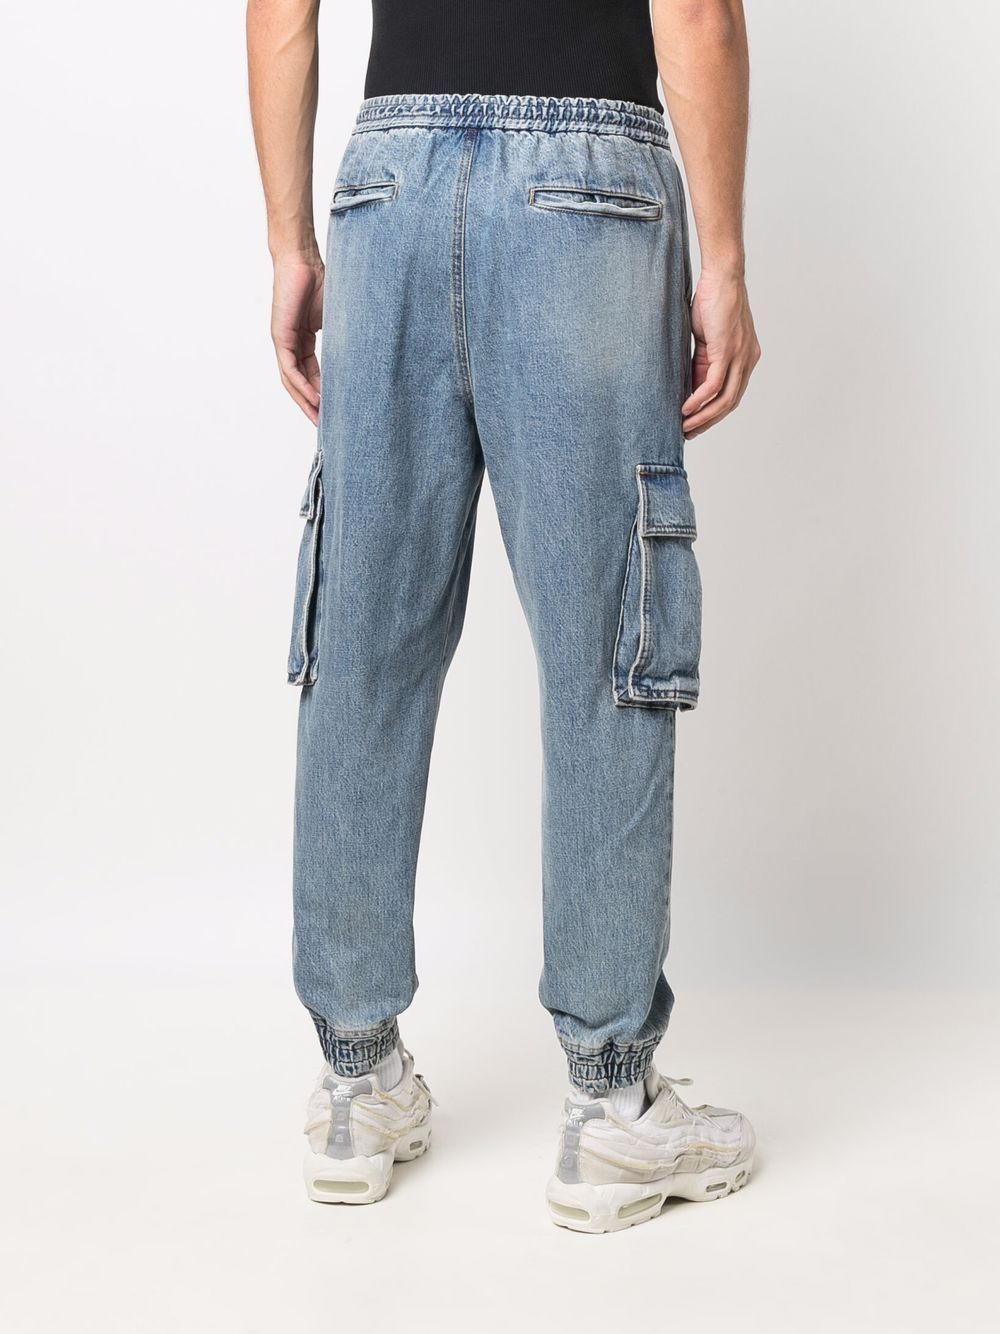 фото Juun.j зауженные джинсы с карманами карго